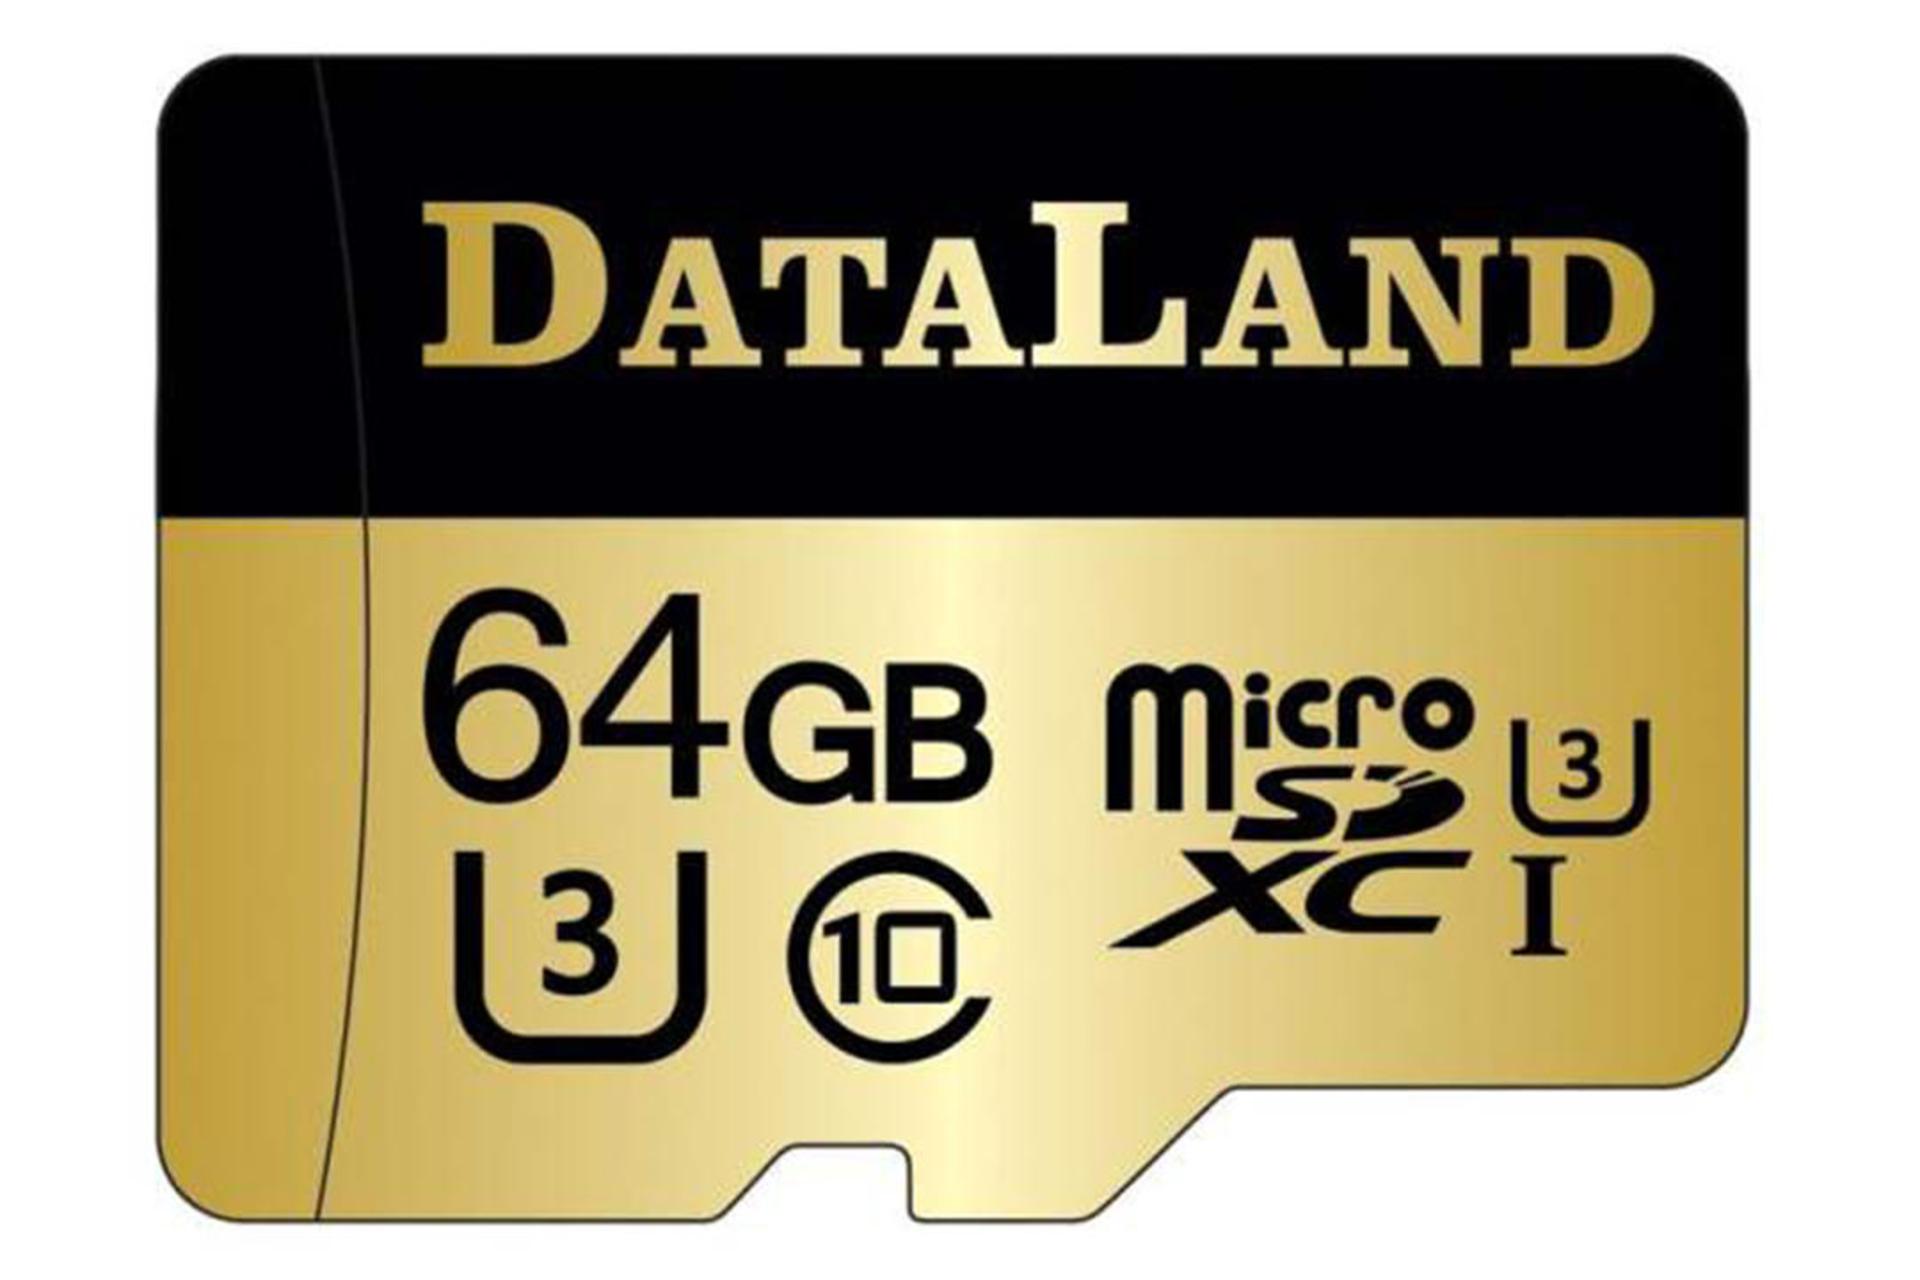 DataLand 600x microSDXC Class 10 UHS-I U3 64GB